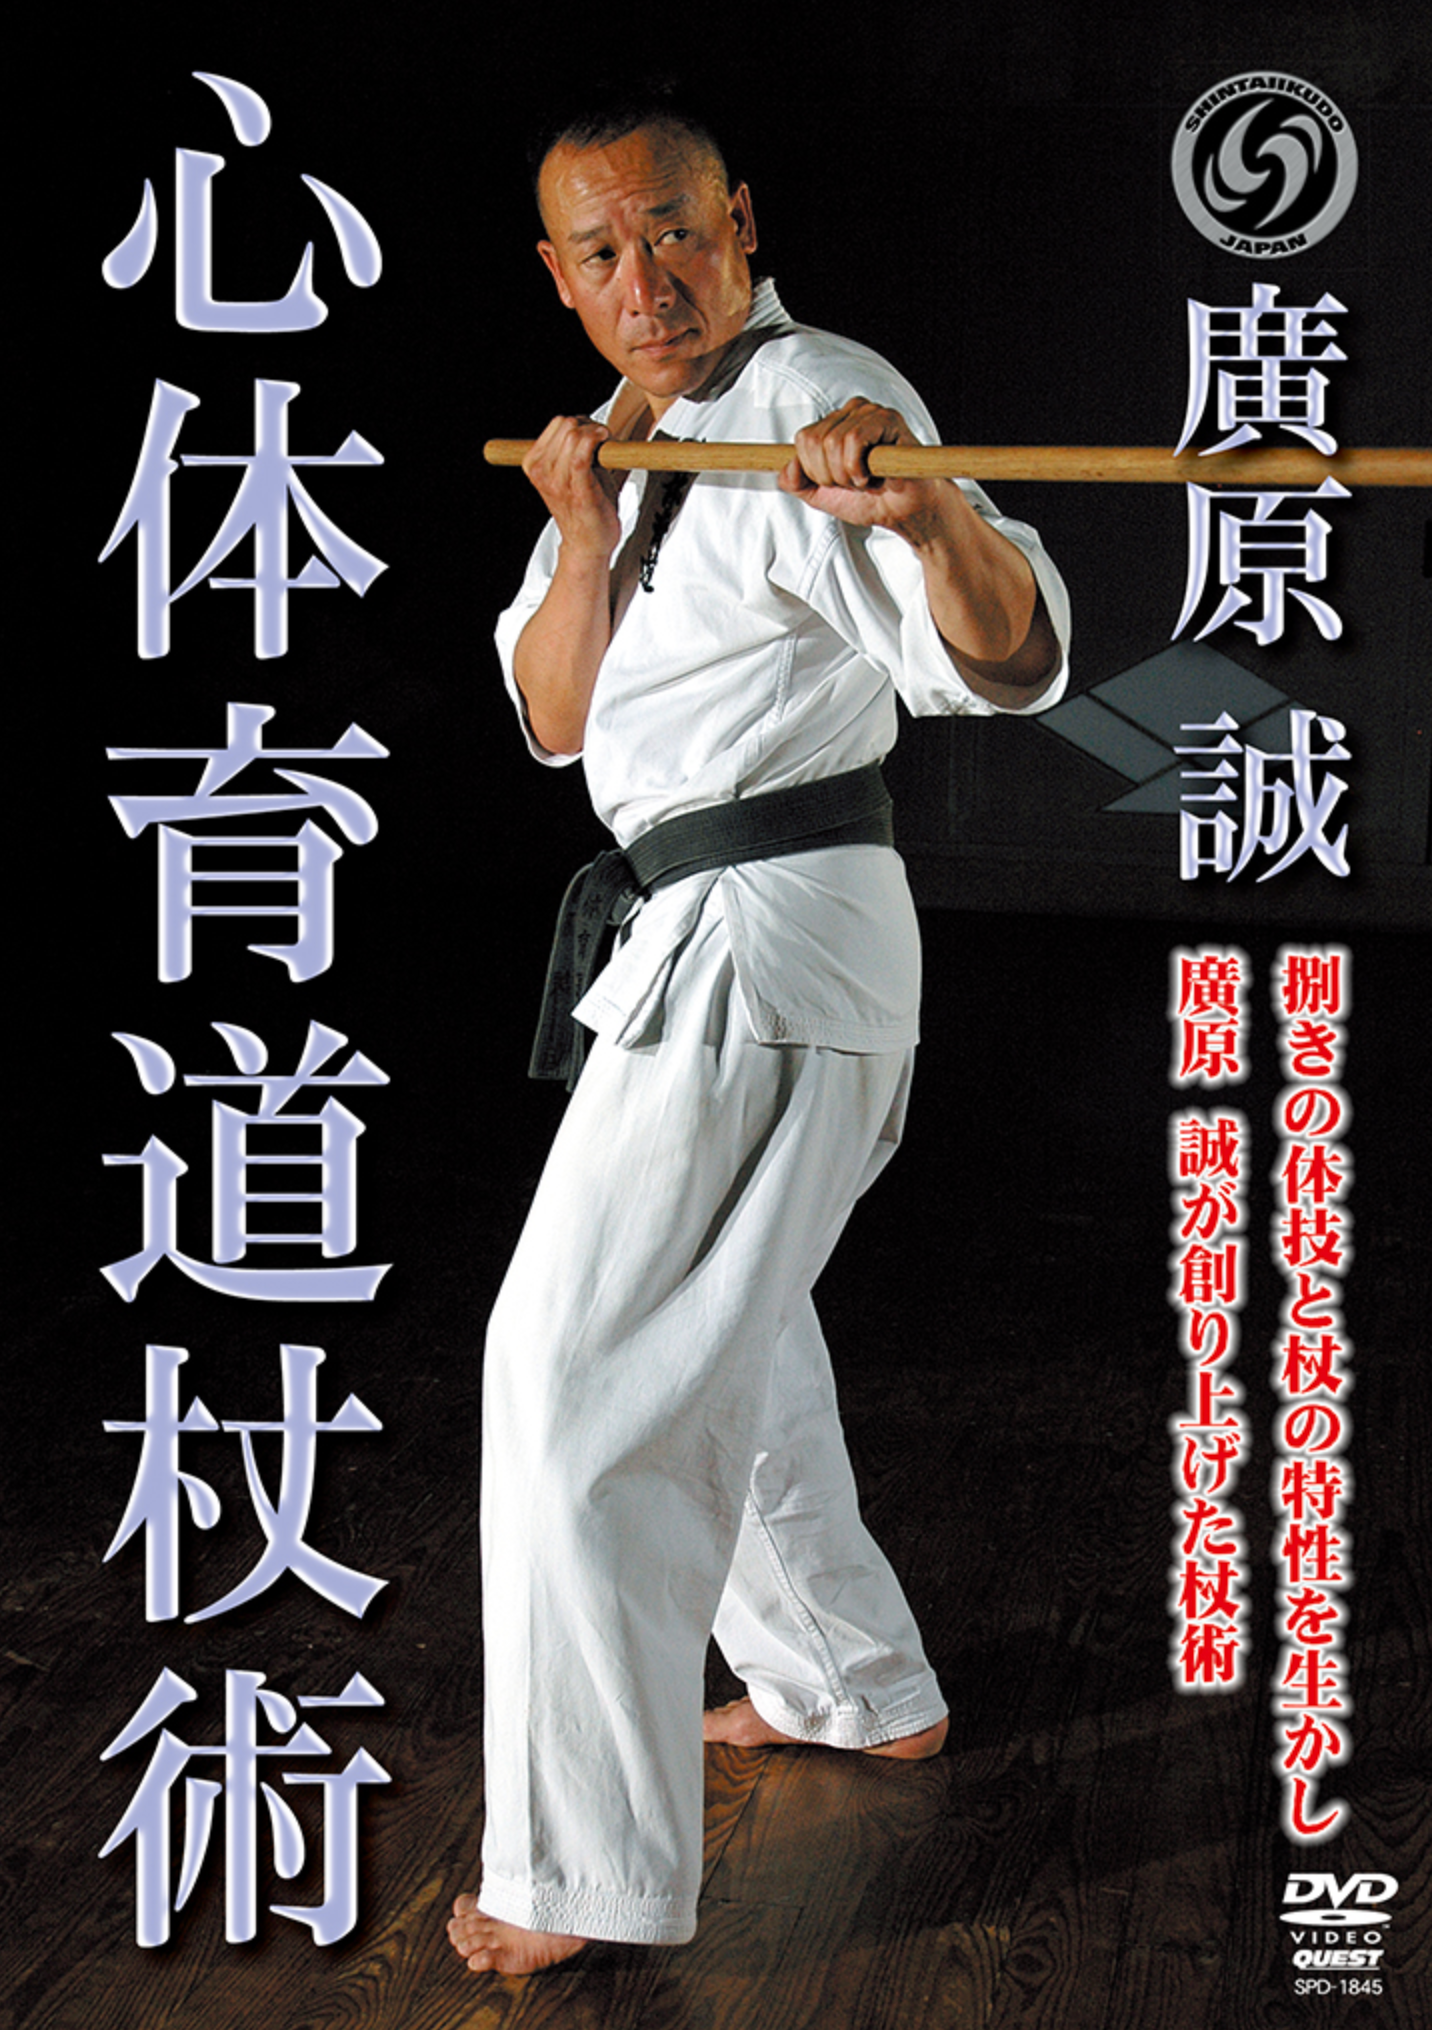 Shintaikudo Jojutsu DVD with Makoto Hirohara - Budovideos Inc